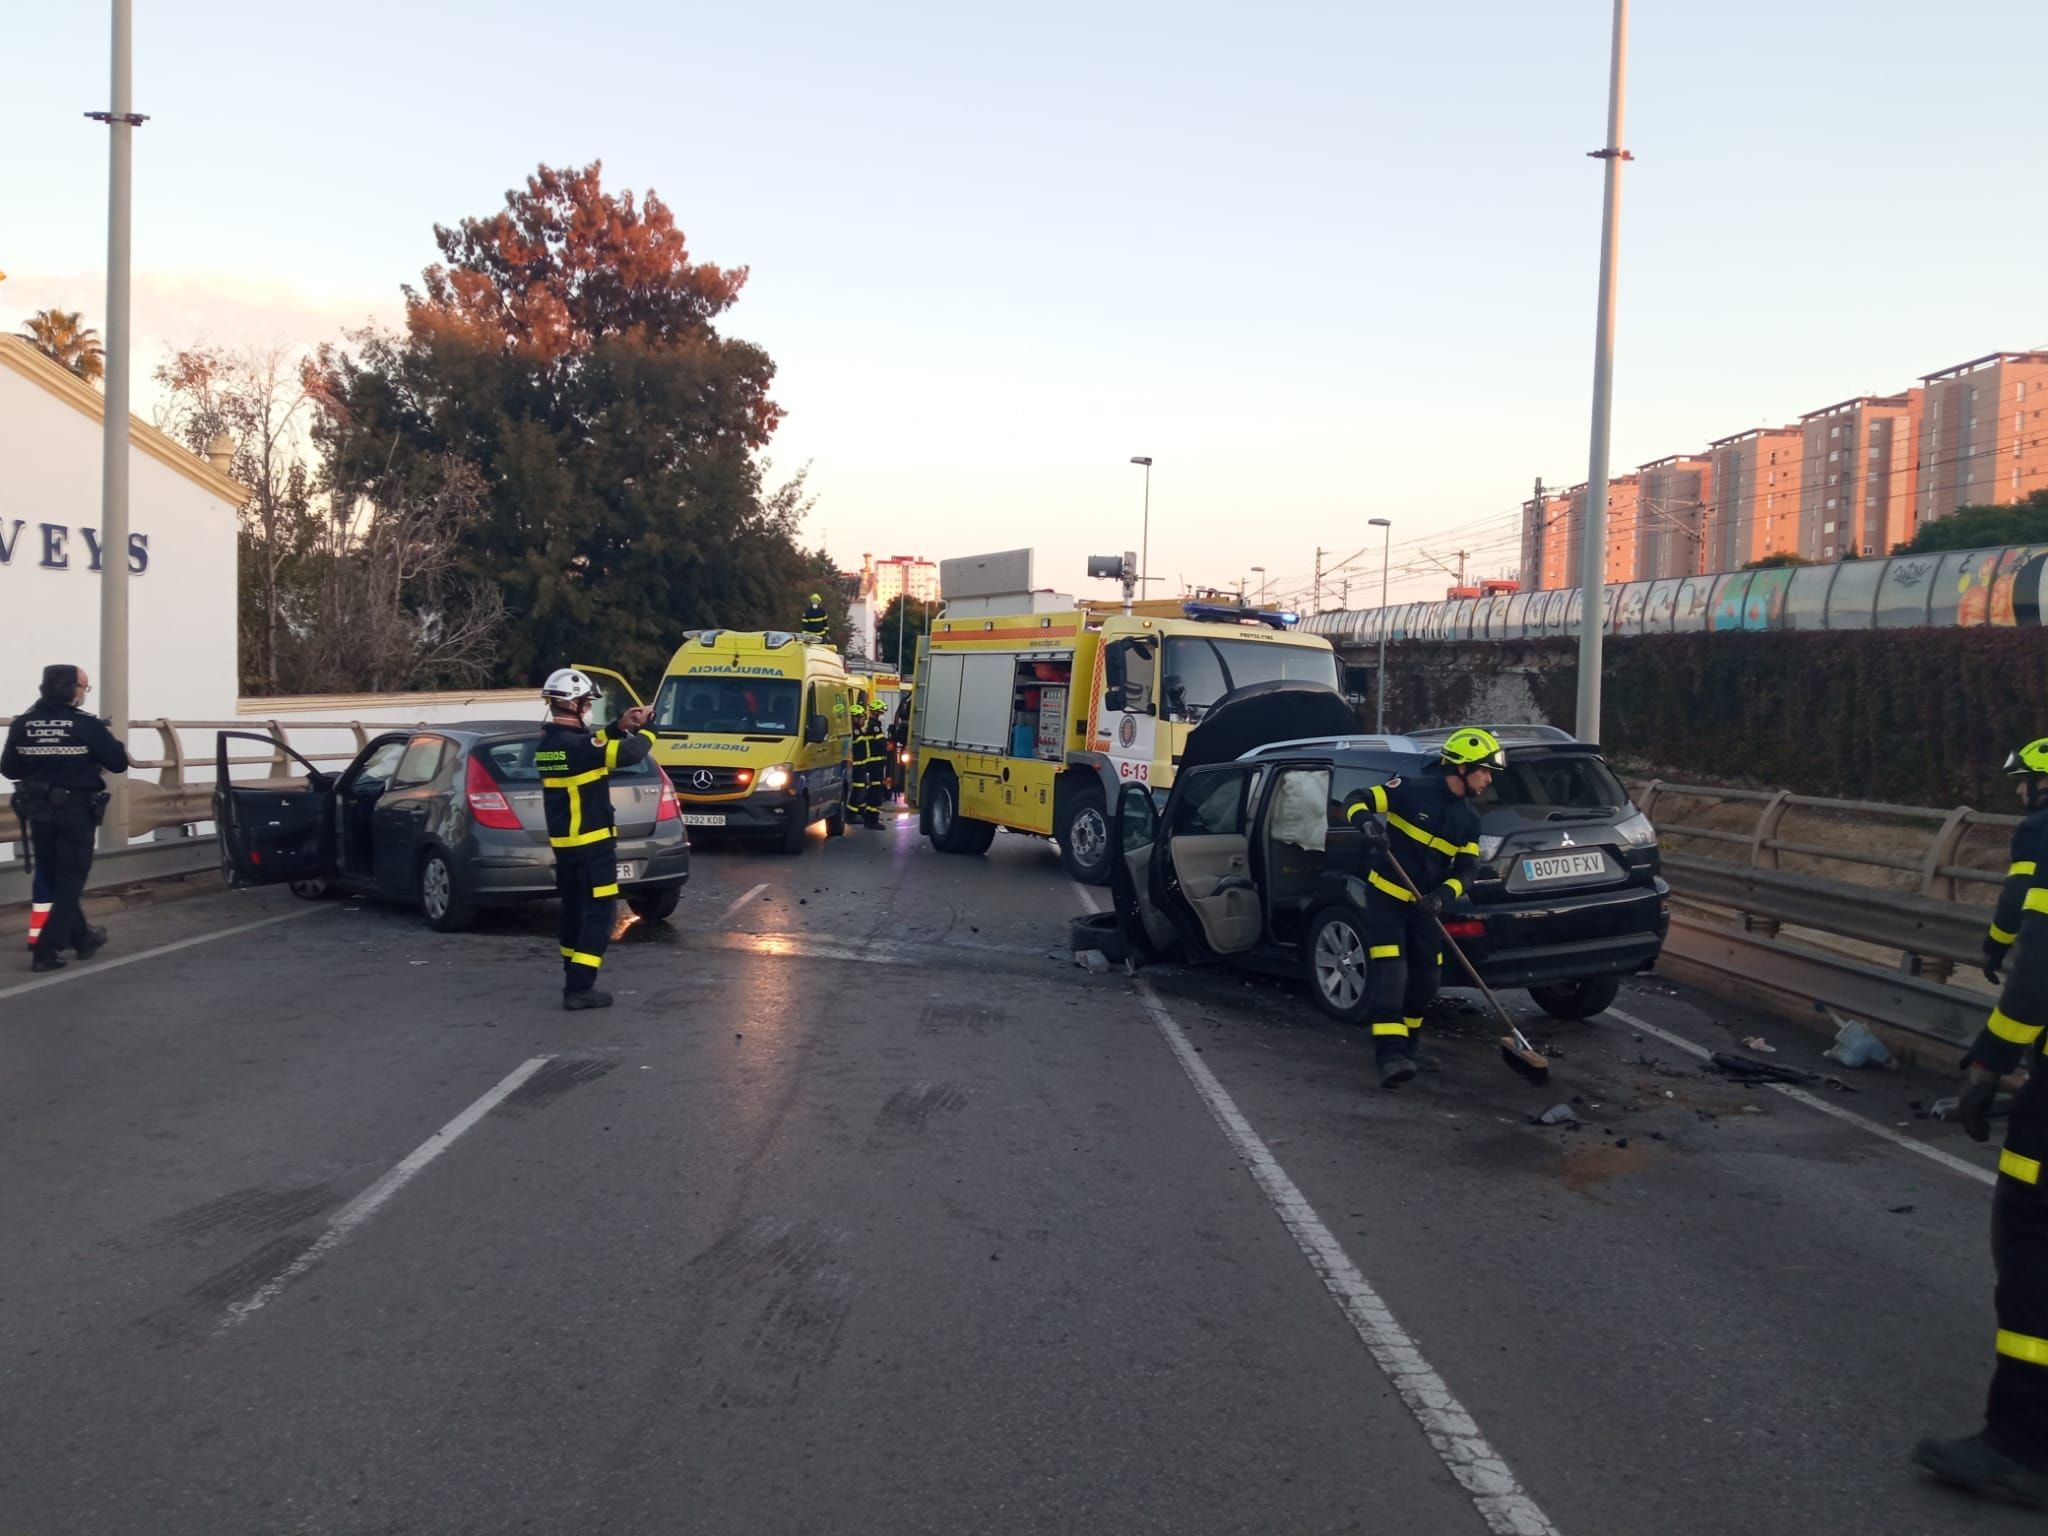 Un bombero de Jerez tiene un accidente de tráfico camino a entrar de servicio